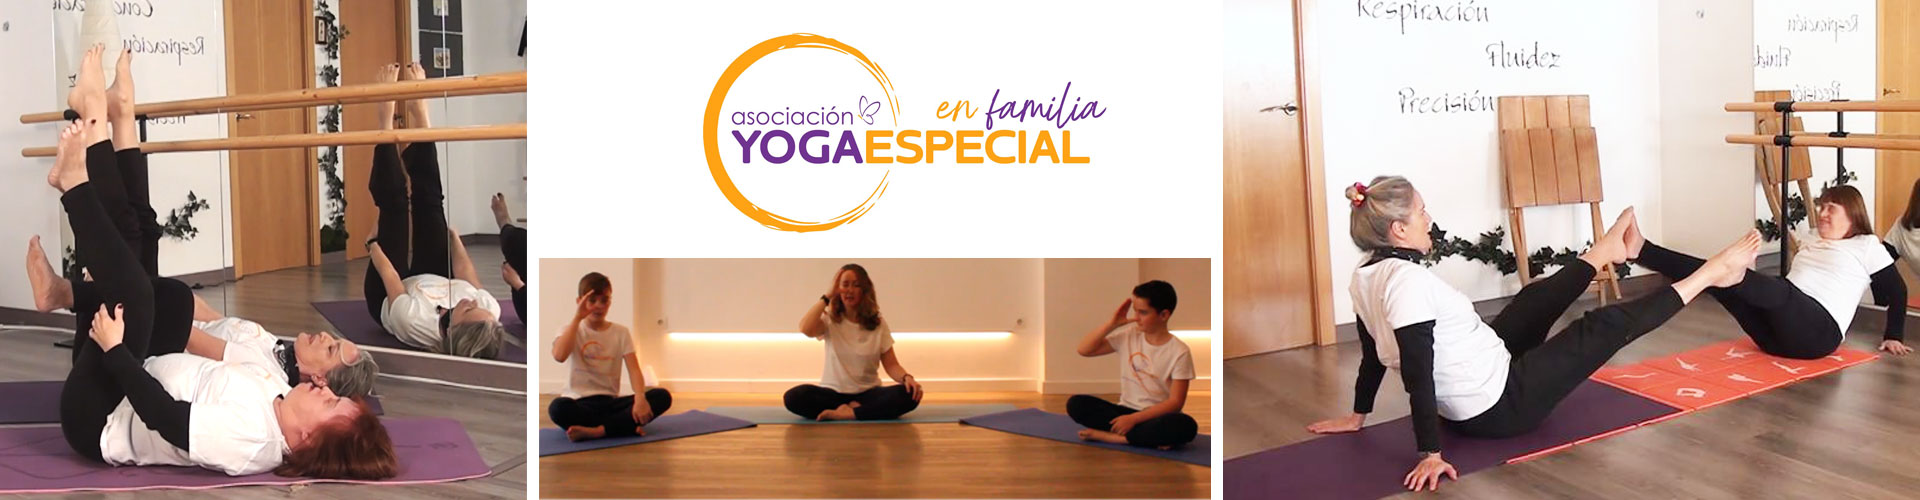 yogaespecial en familia